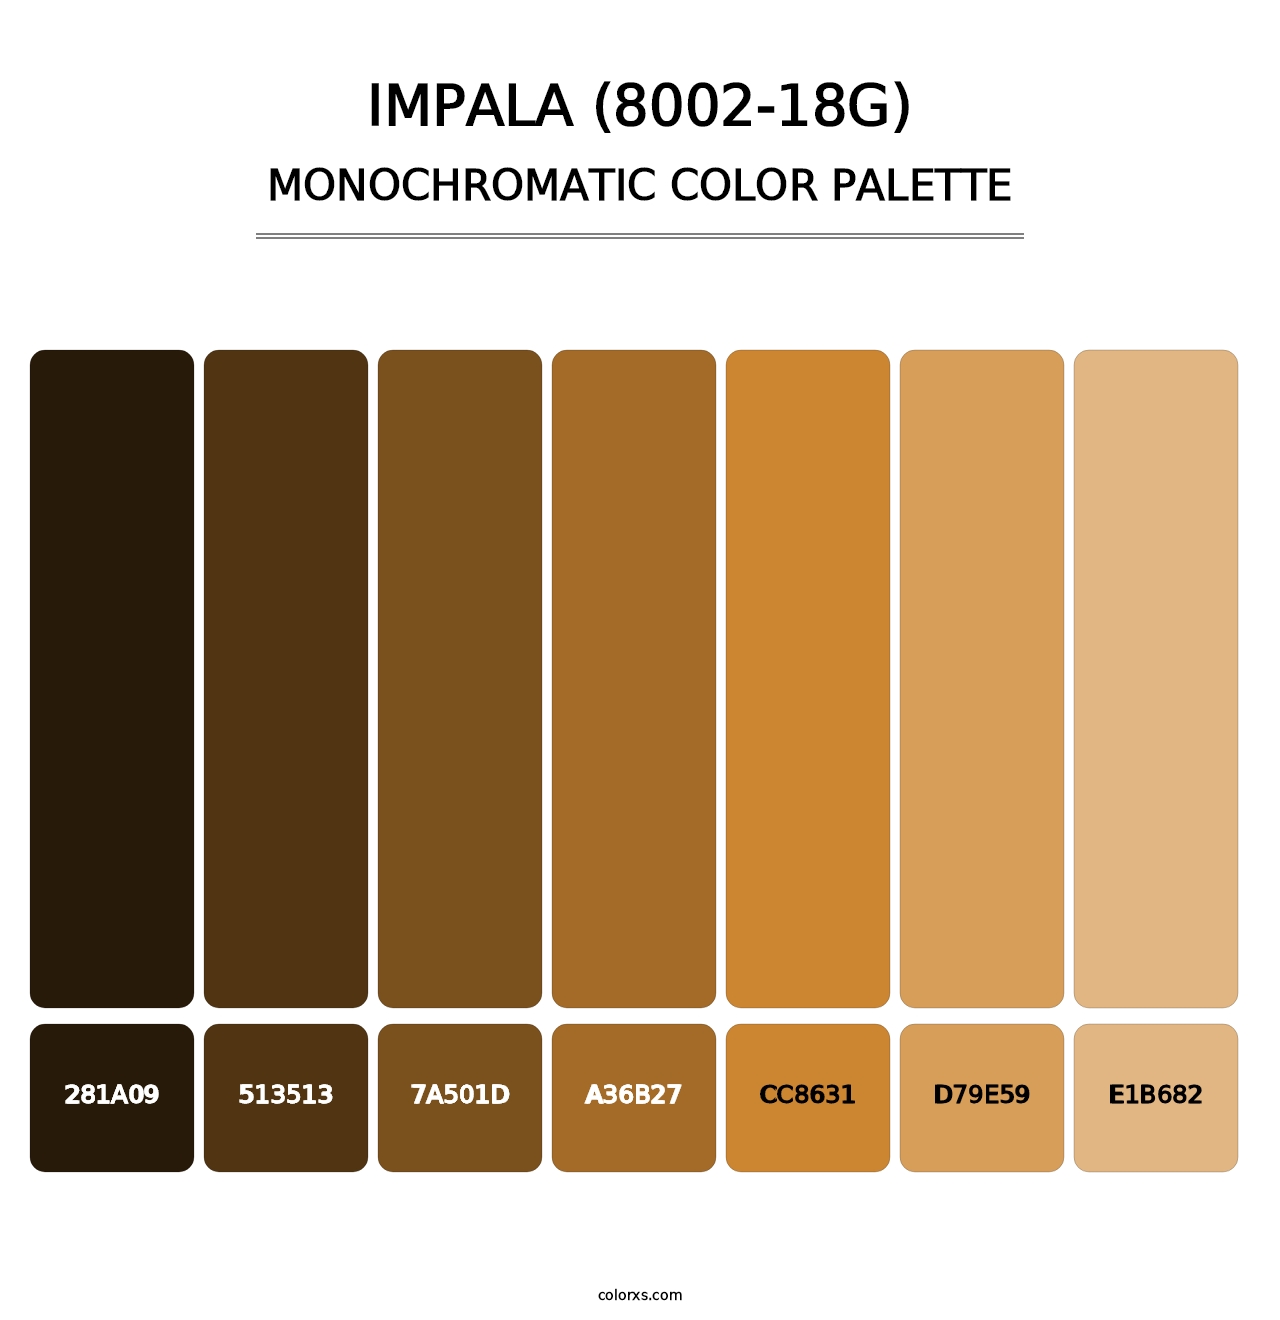 Impala (8002-18G) - Monochromatic Color Palette